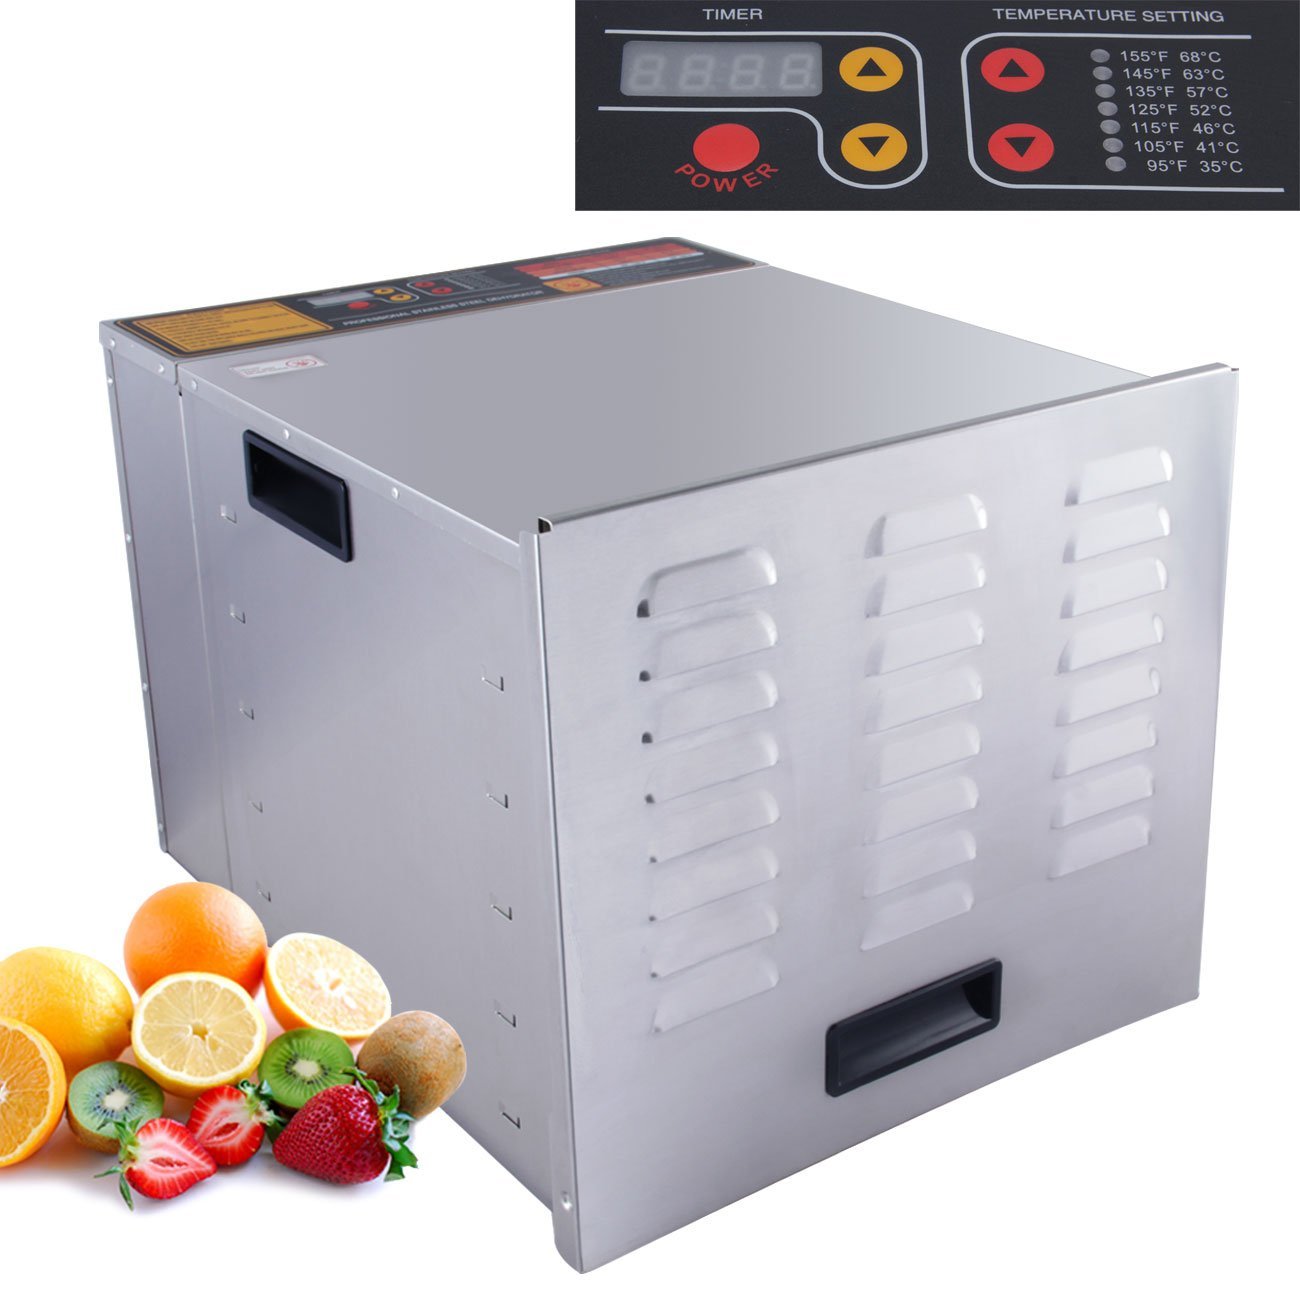 DELLA Commercial 1200W 10-Tray Food Dehydrator